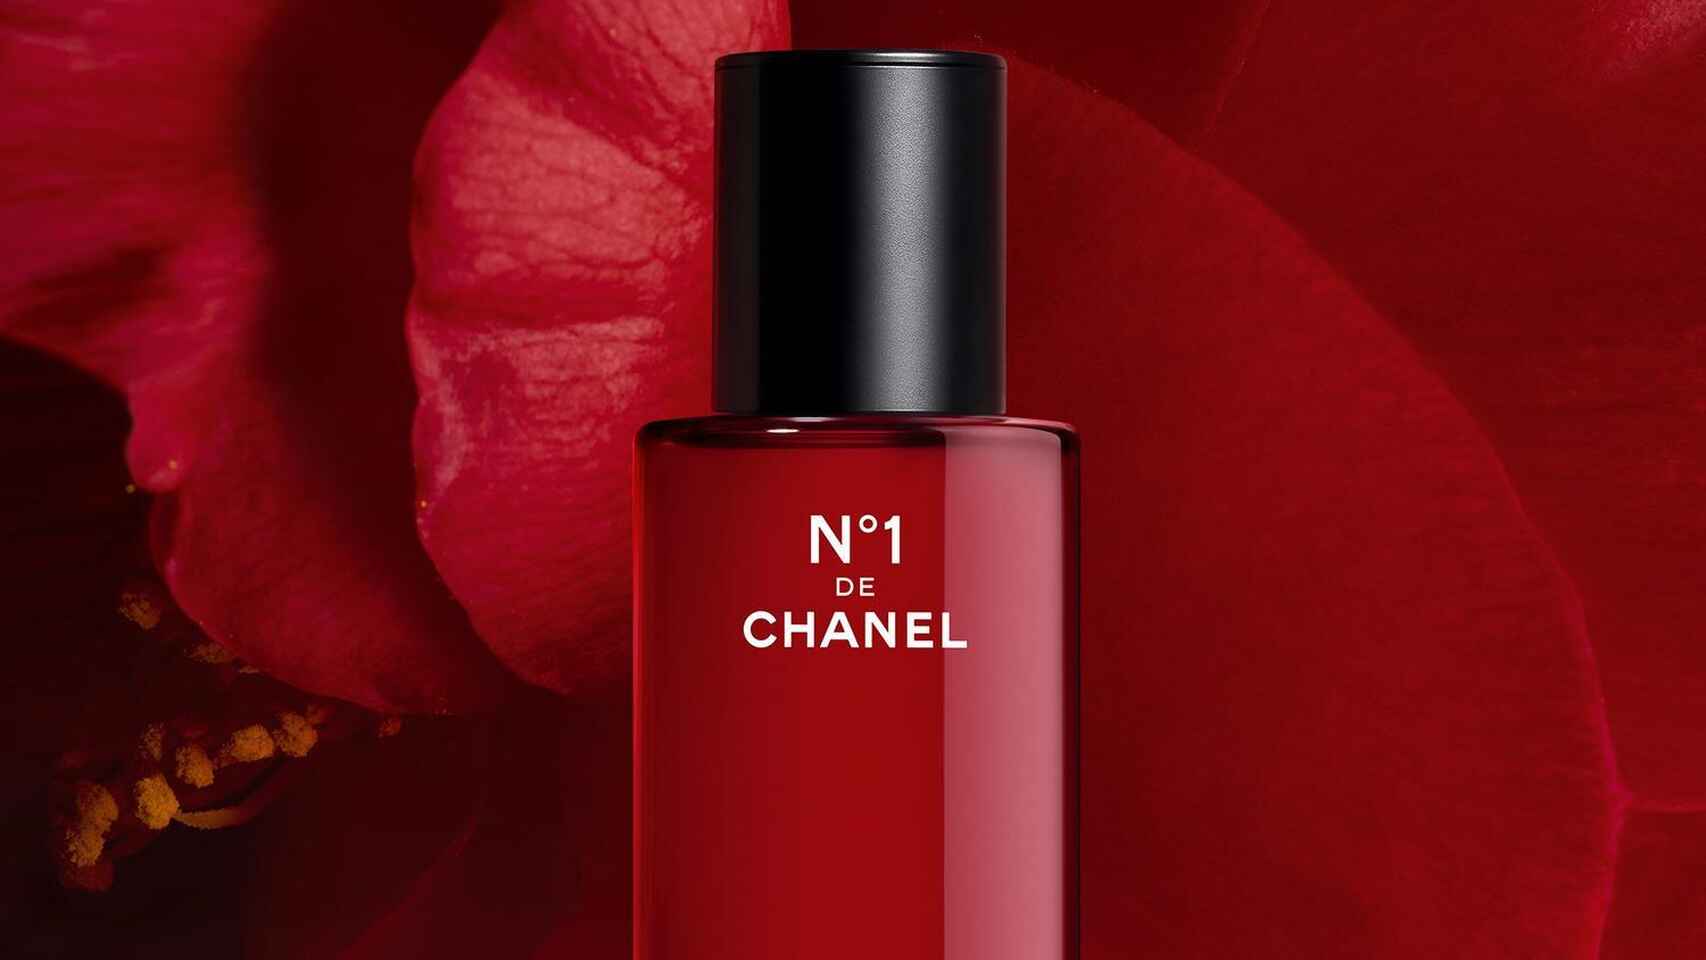 Chanel N°1, así es la nueva línea de tratamiento para la piel de la maison Chanel